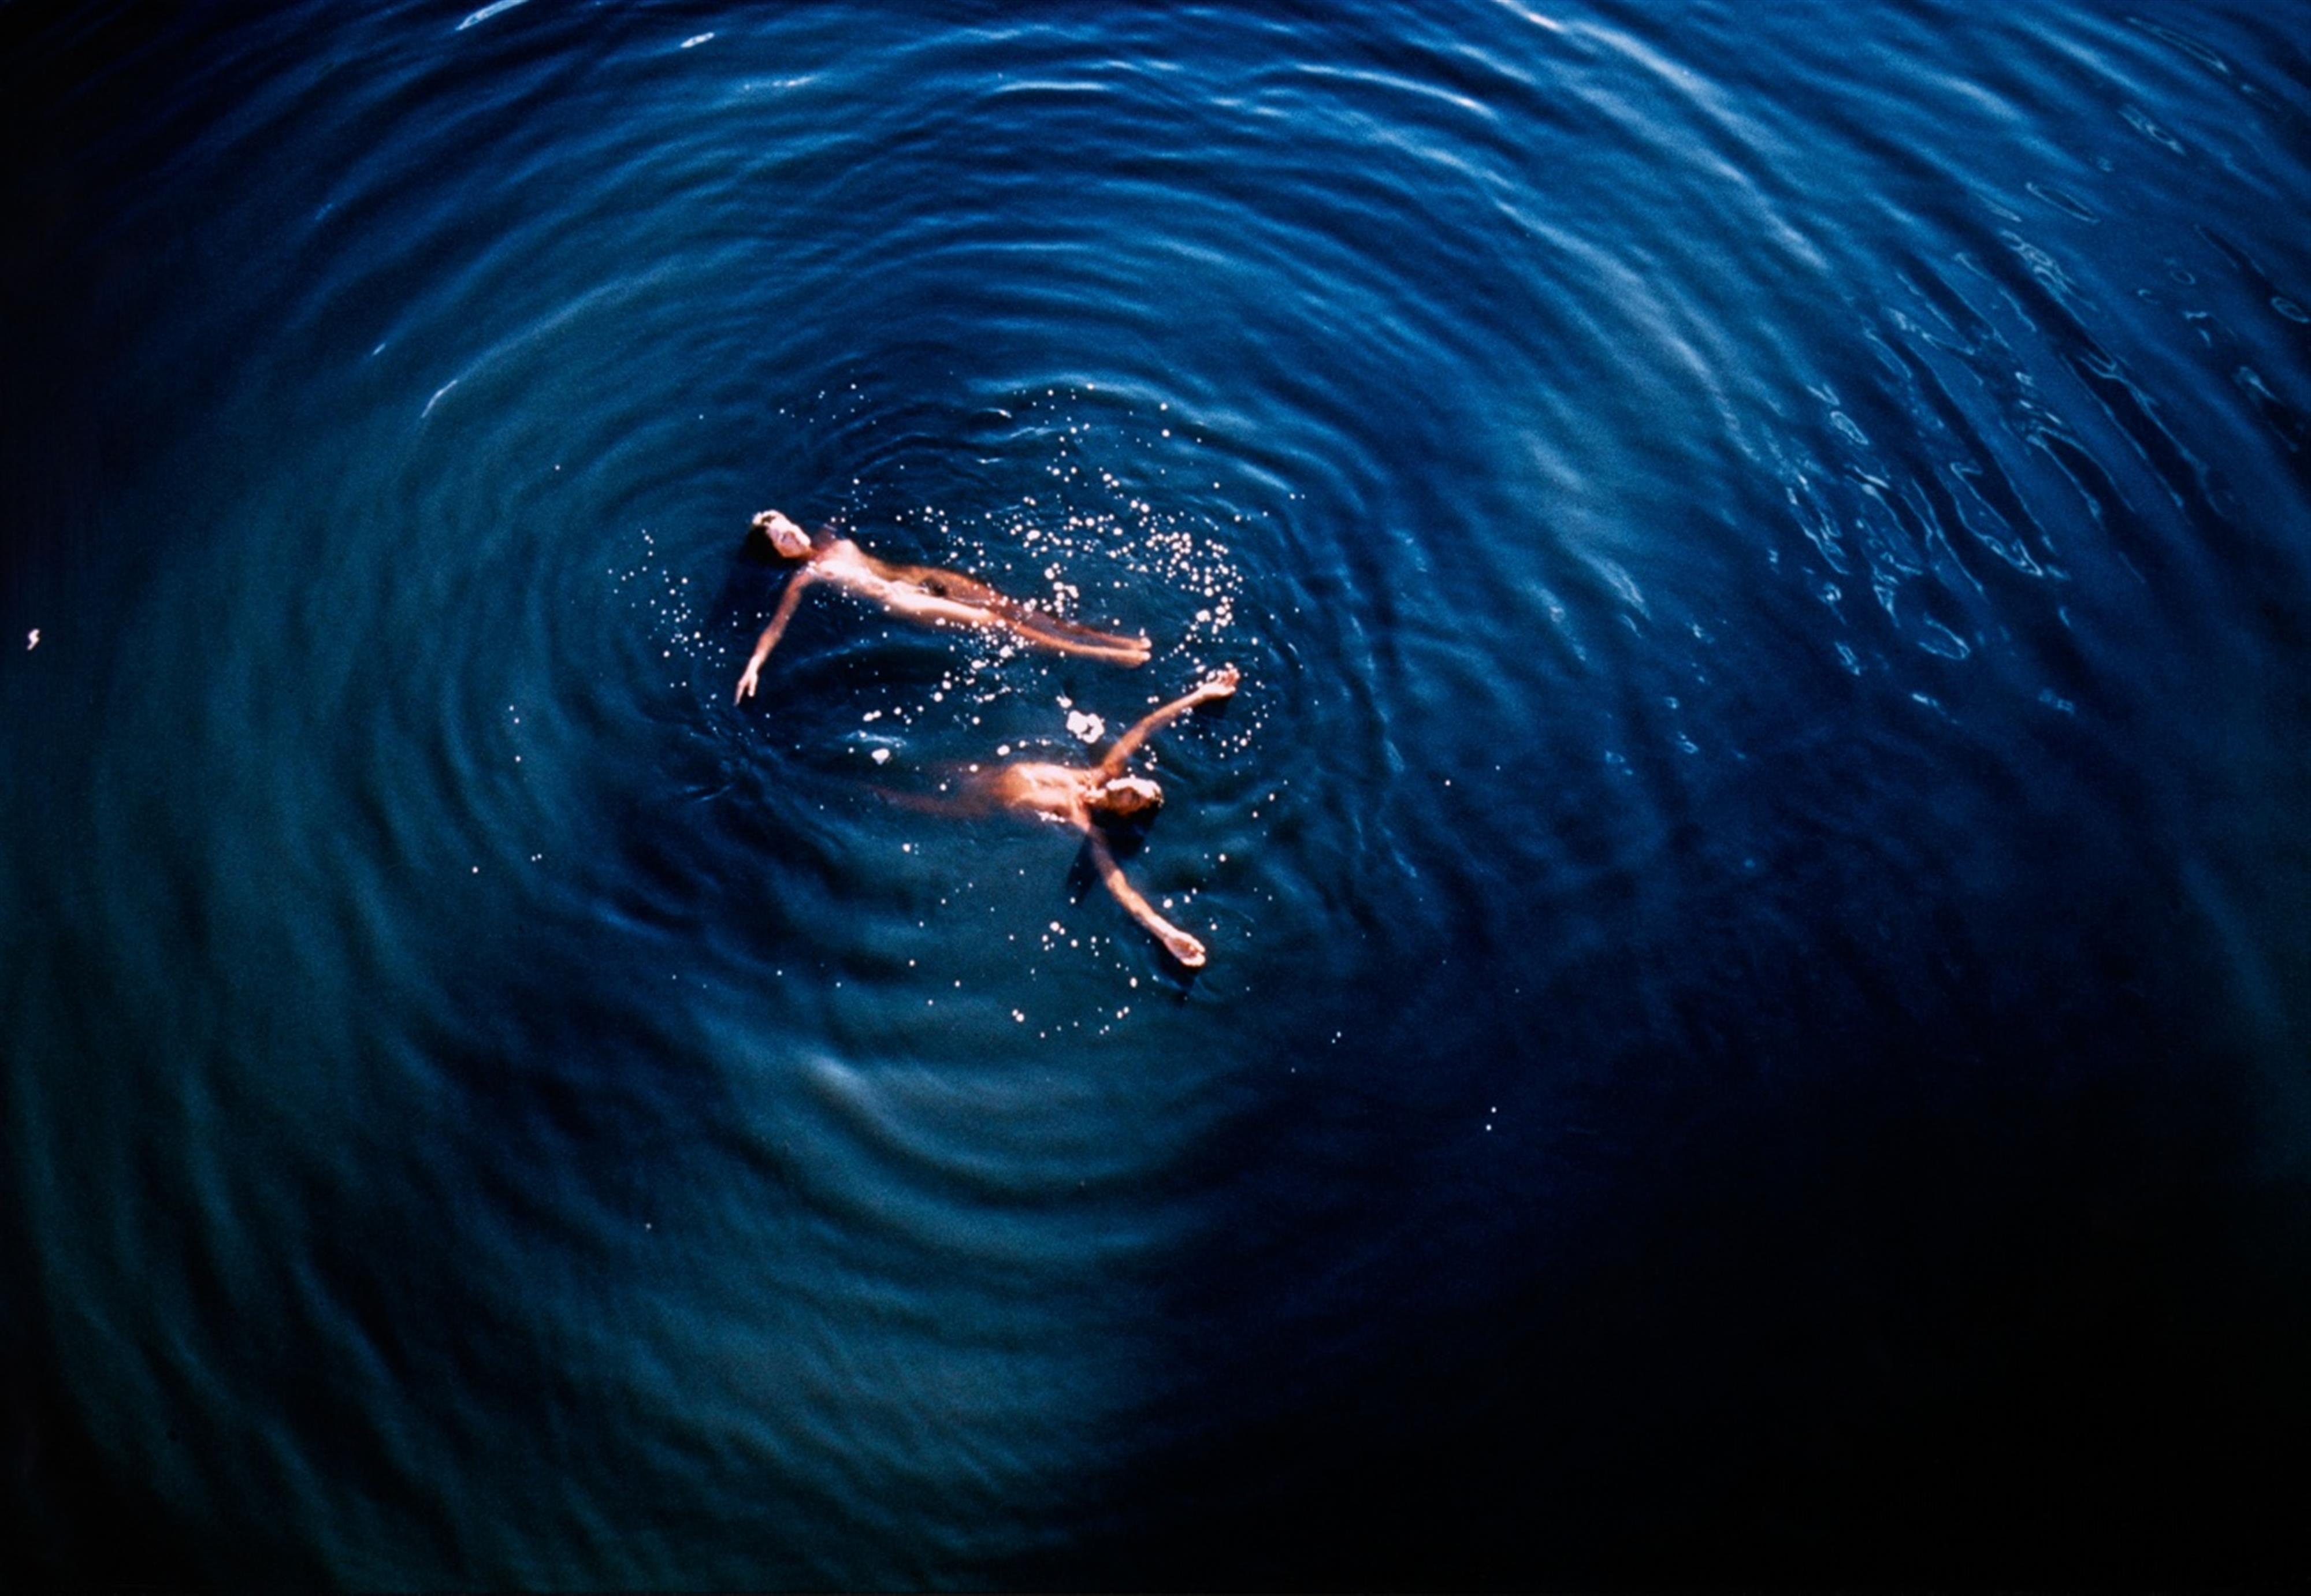 Marina Abramovic
Ulay - Floating/Australia - image-1